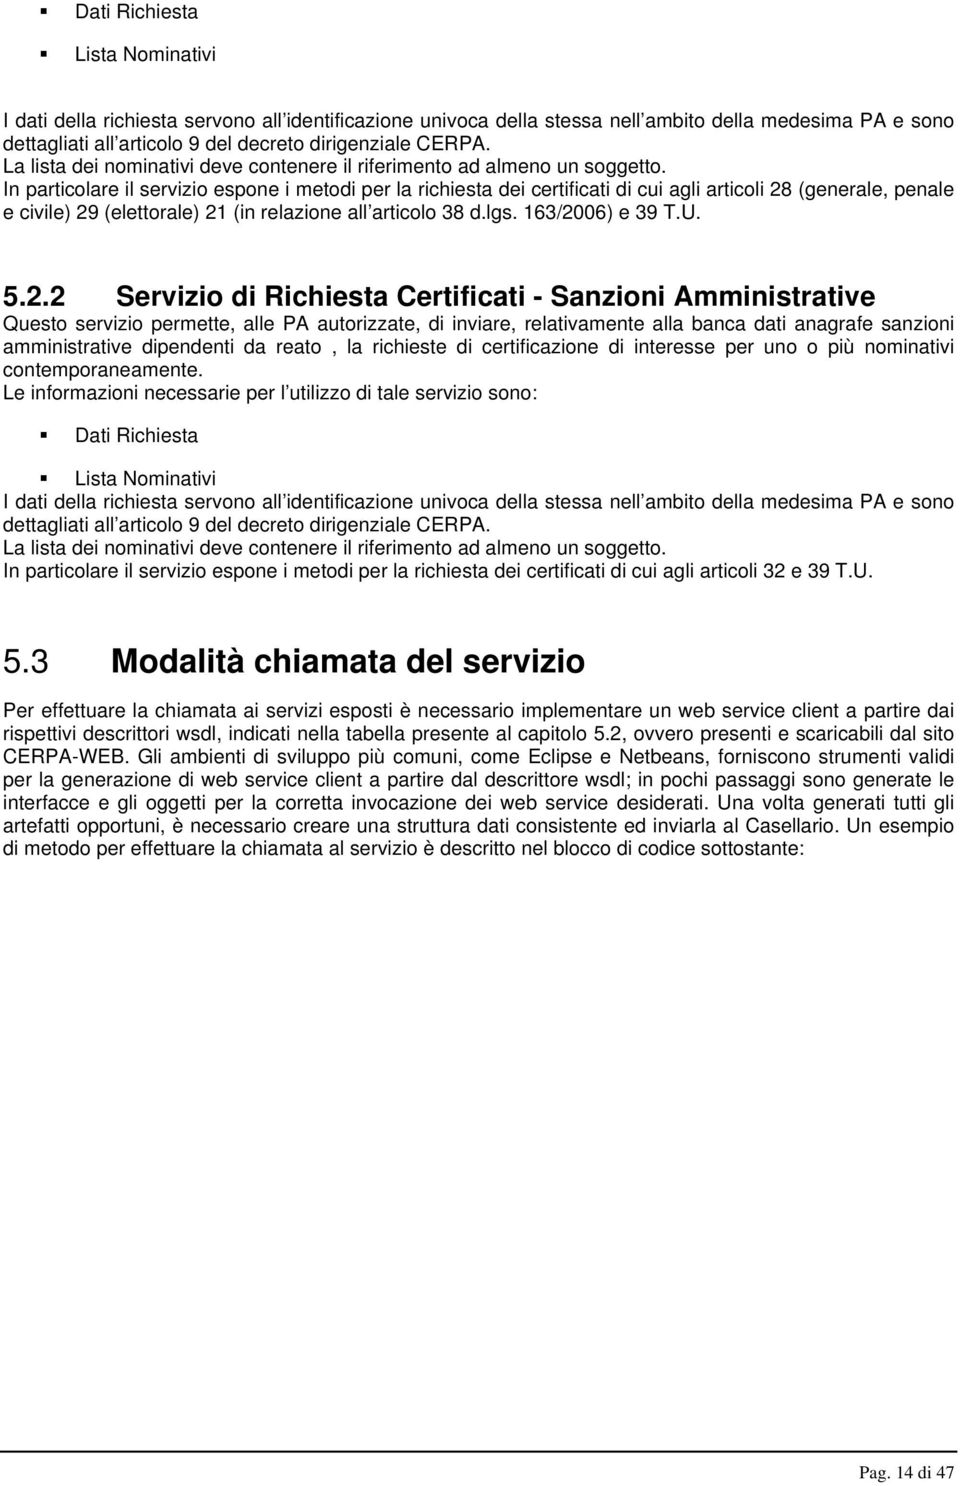 In particolare il servizio espone i metodi per la richiesta dei certificati di cui agli articoli 28 (generale, penale e civile) 29 (elettorale) 21 (in relazione all articolo 38 d.lgs.